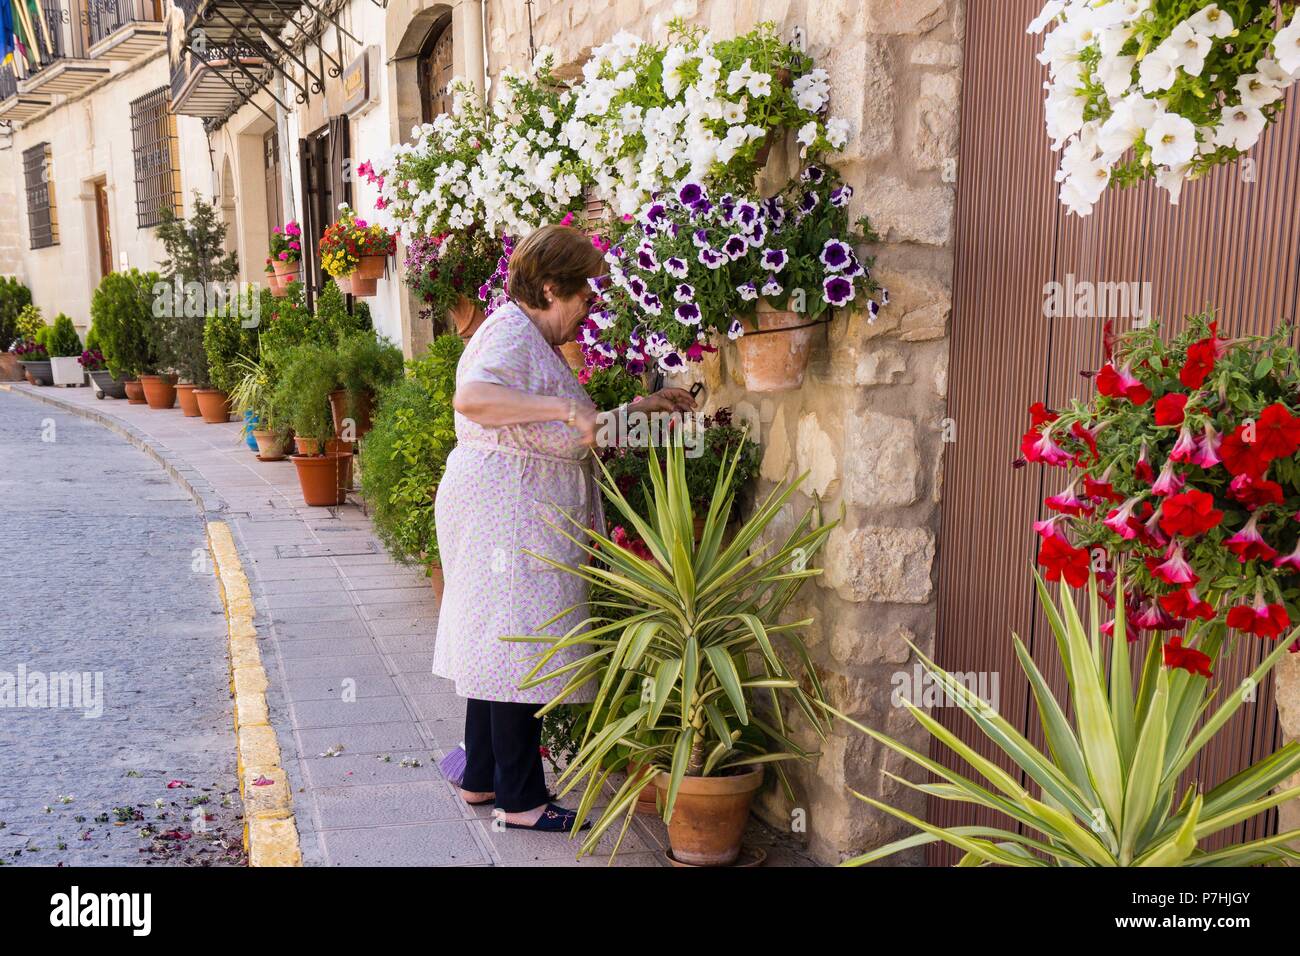 macetas de flores en la calle, Iznatoraf, Loma de Ubeda, provincia de Jaén  en la comarca de las Villas, spain, europe Stock Photo - Alamy